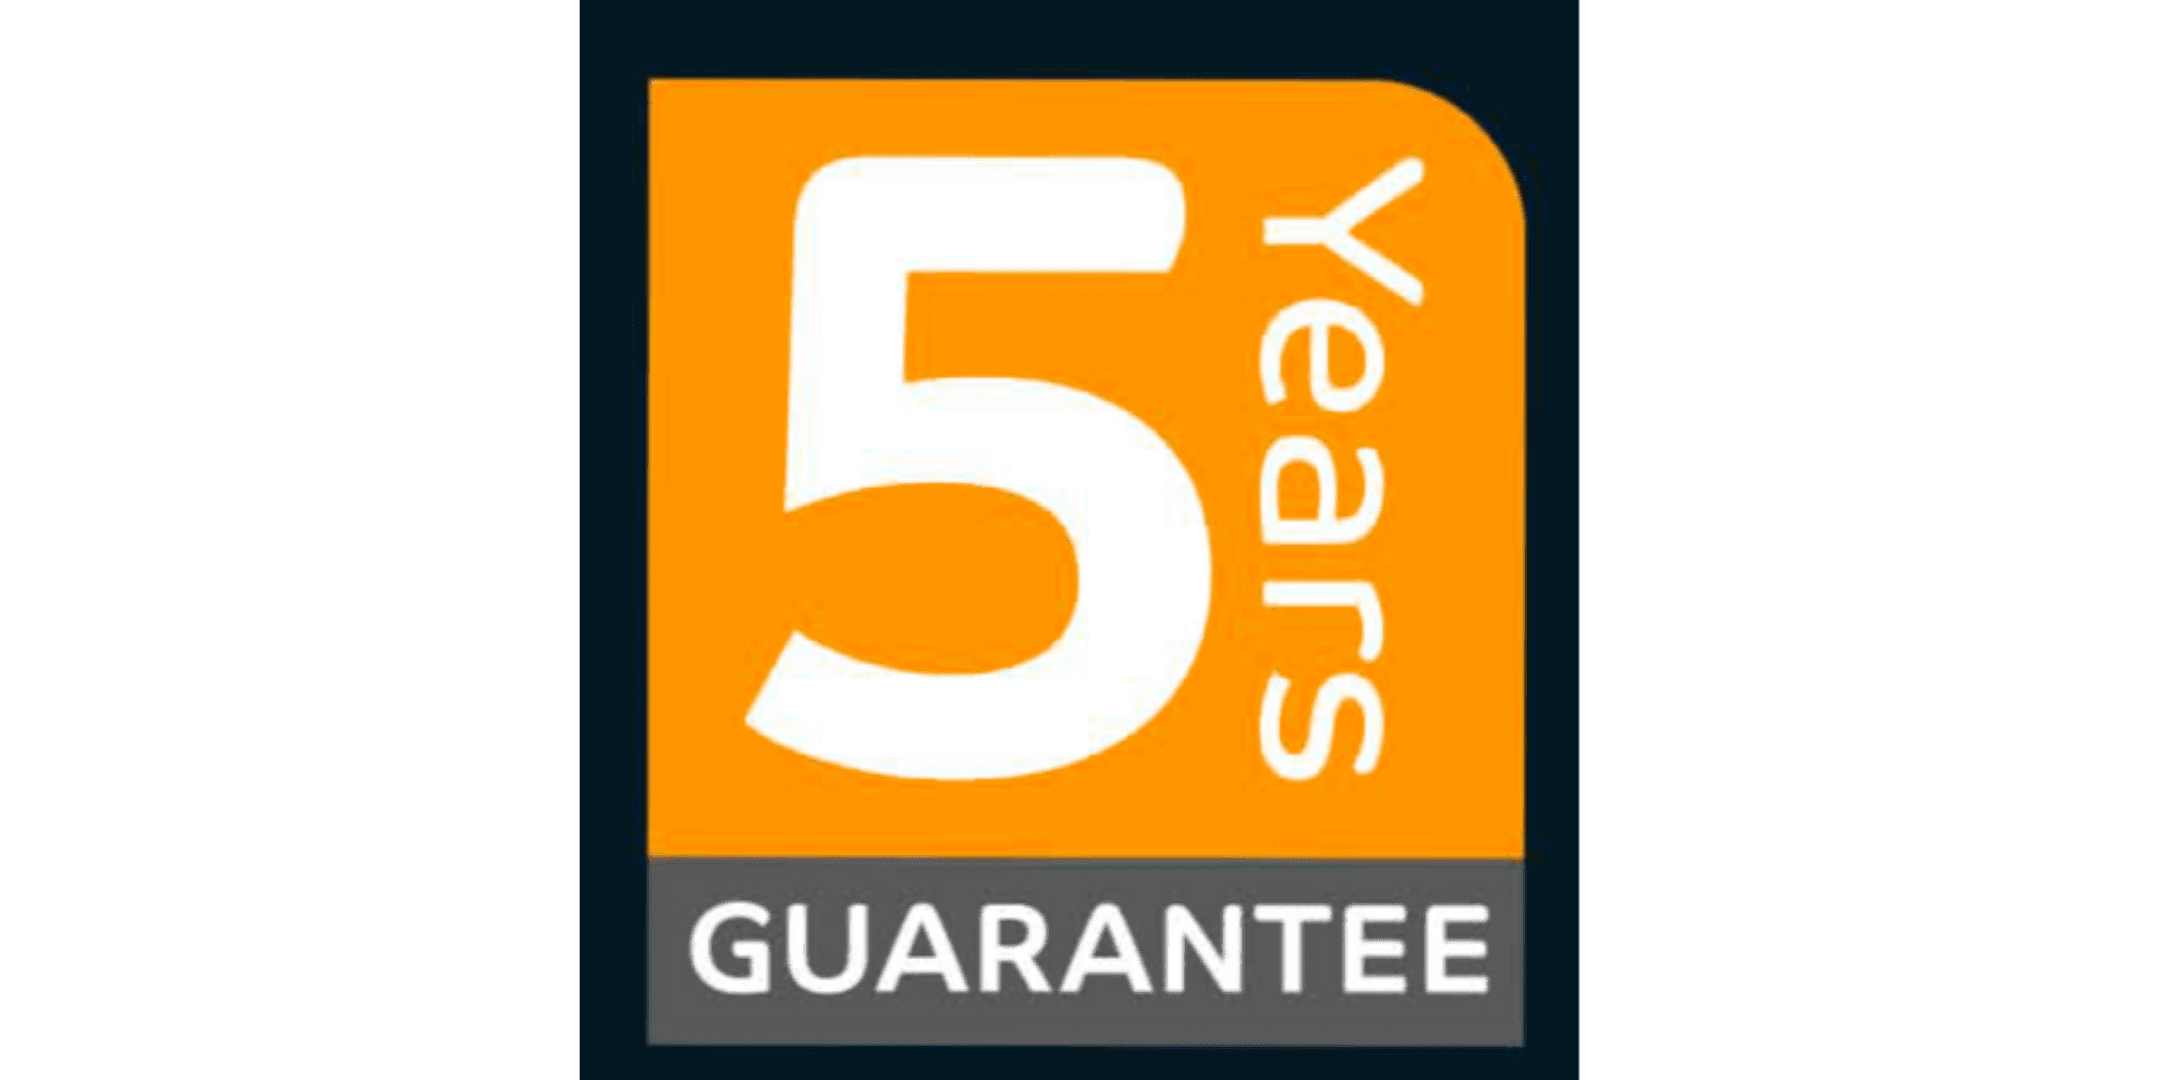 5 years guarantee logo